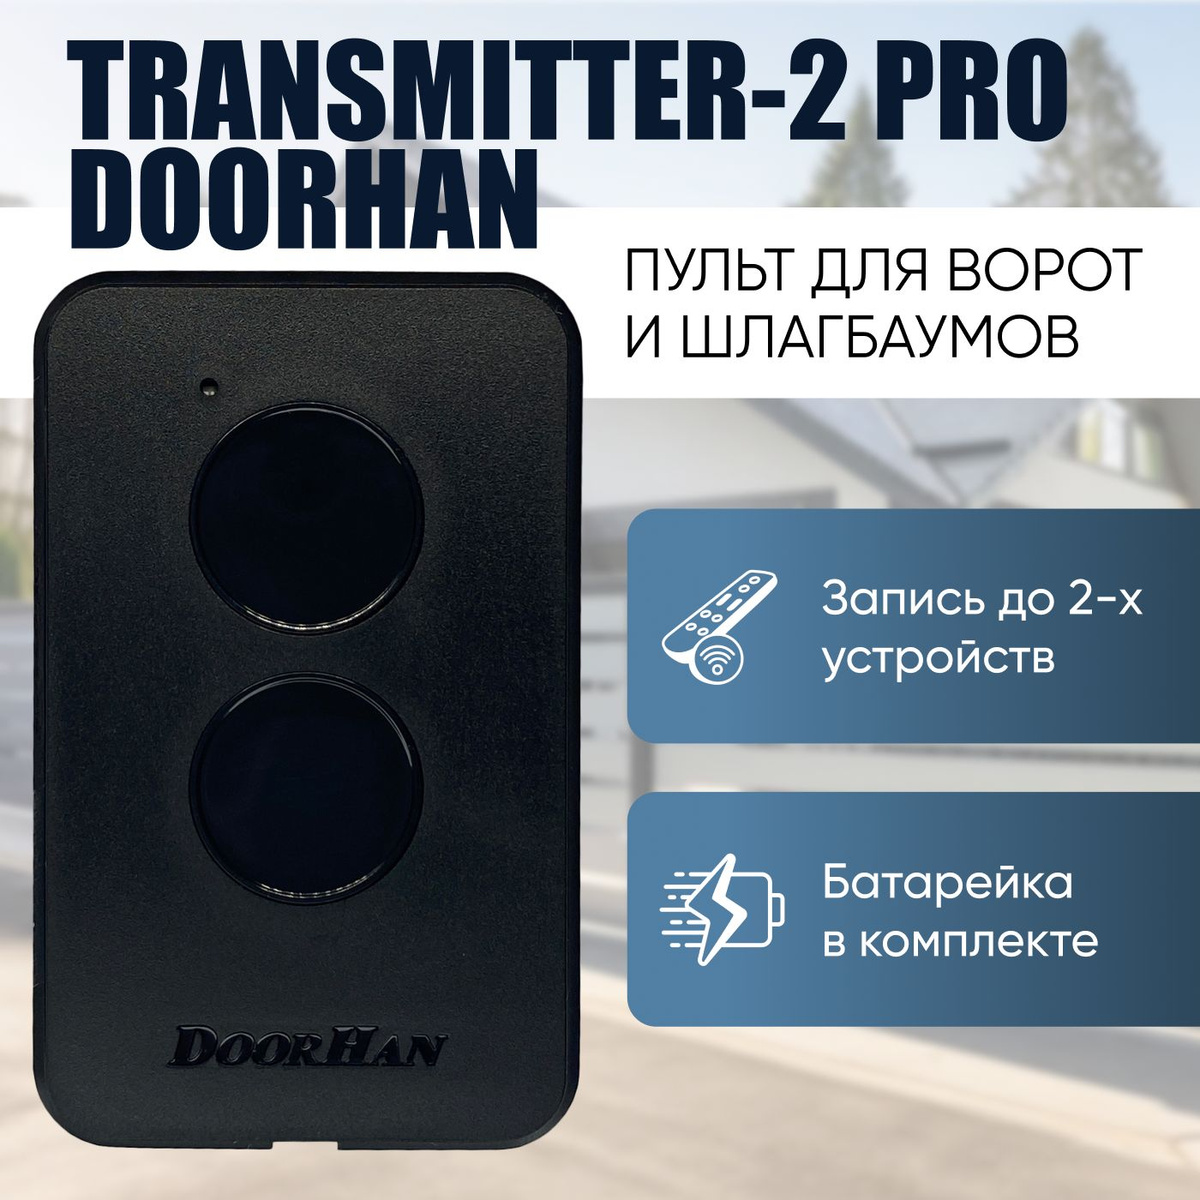 Пульт для ворот Дорхан DoorHan Transmitter-2 PRO